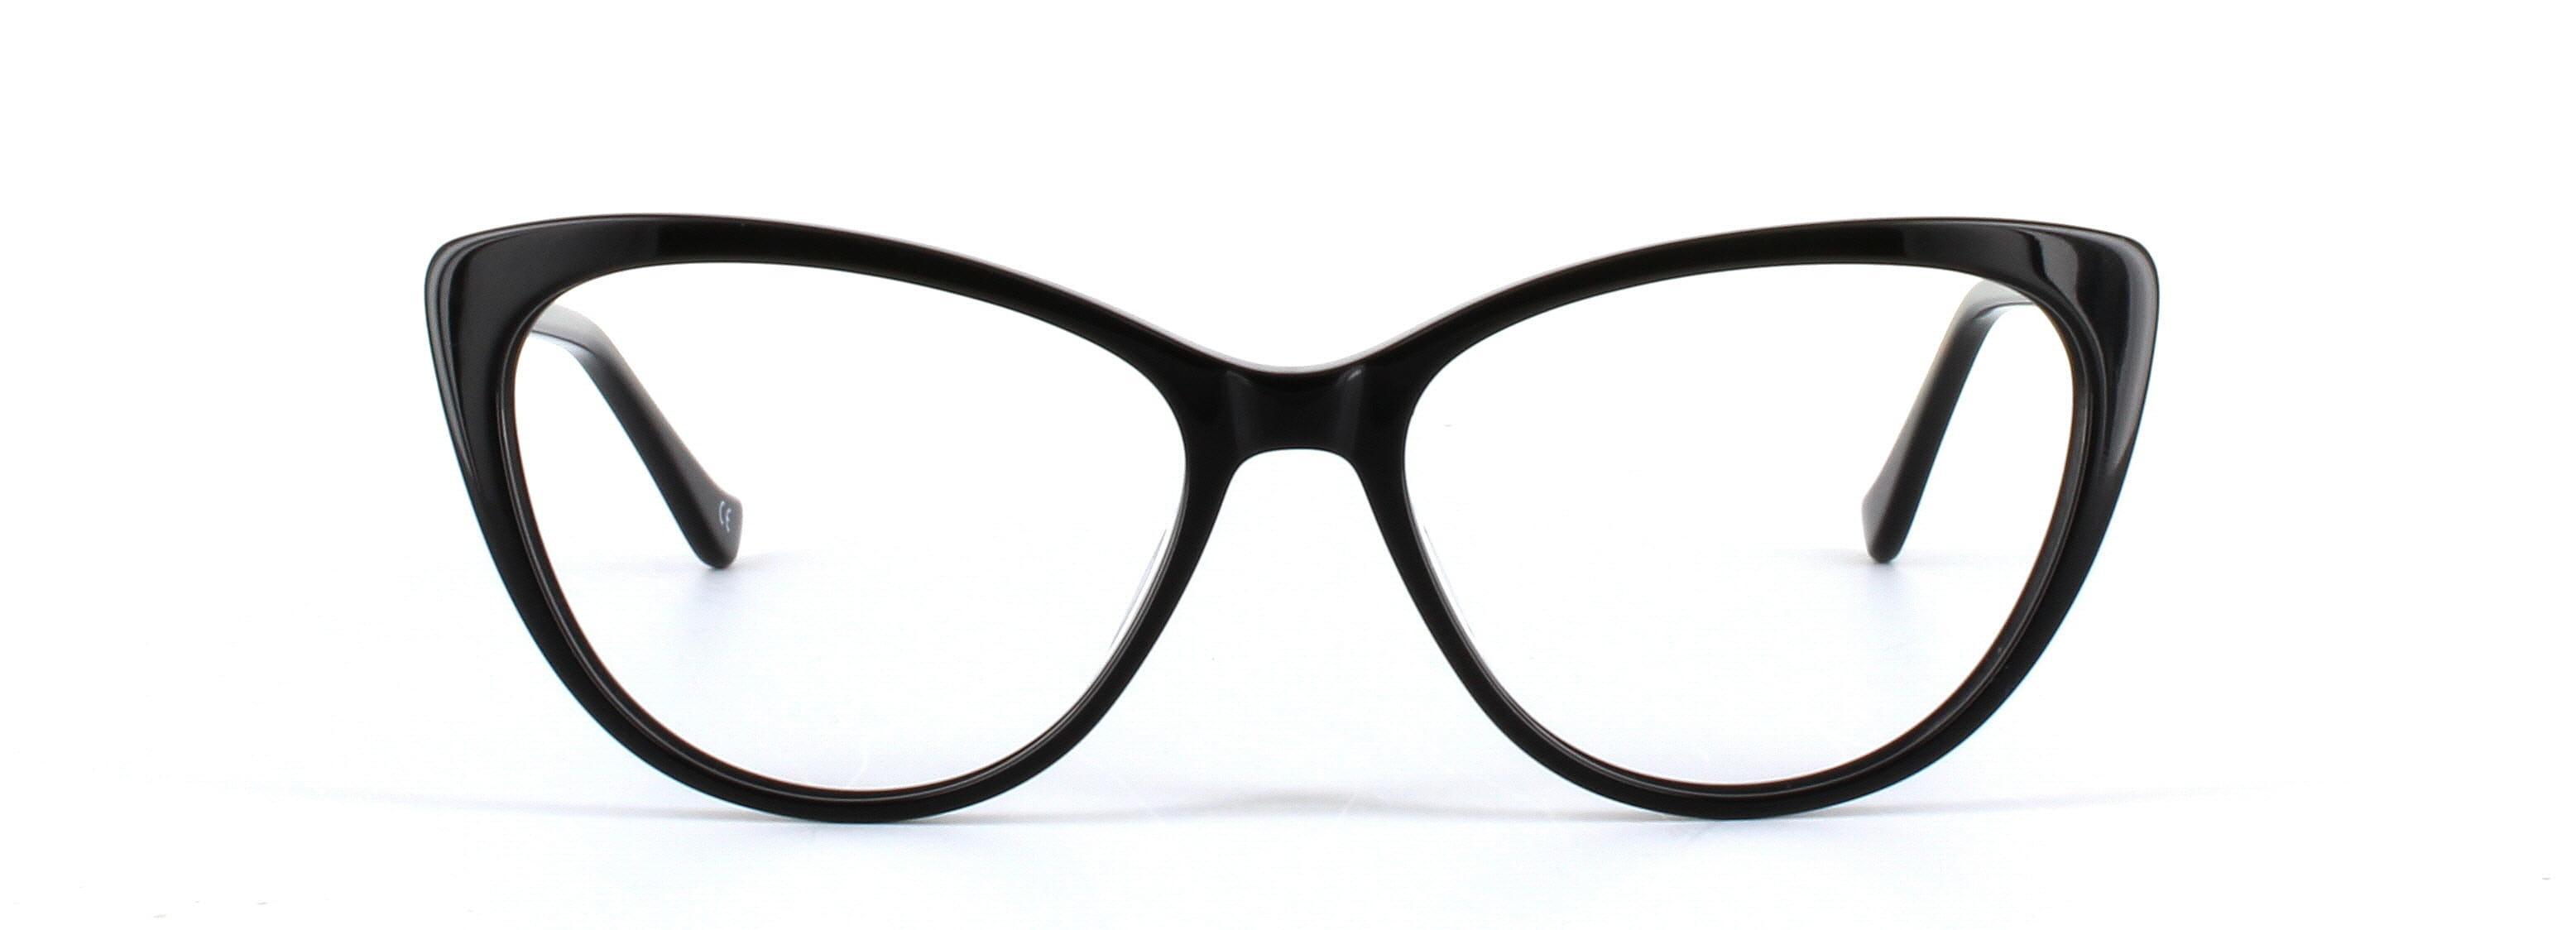 Lydia Black Full Rim Cat Eye Acetate Glasses - Image View 5